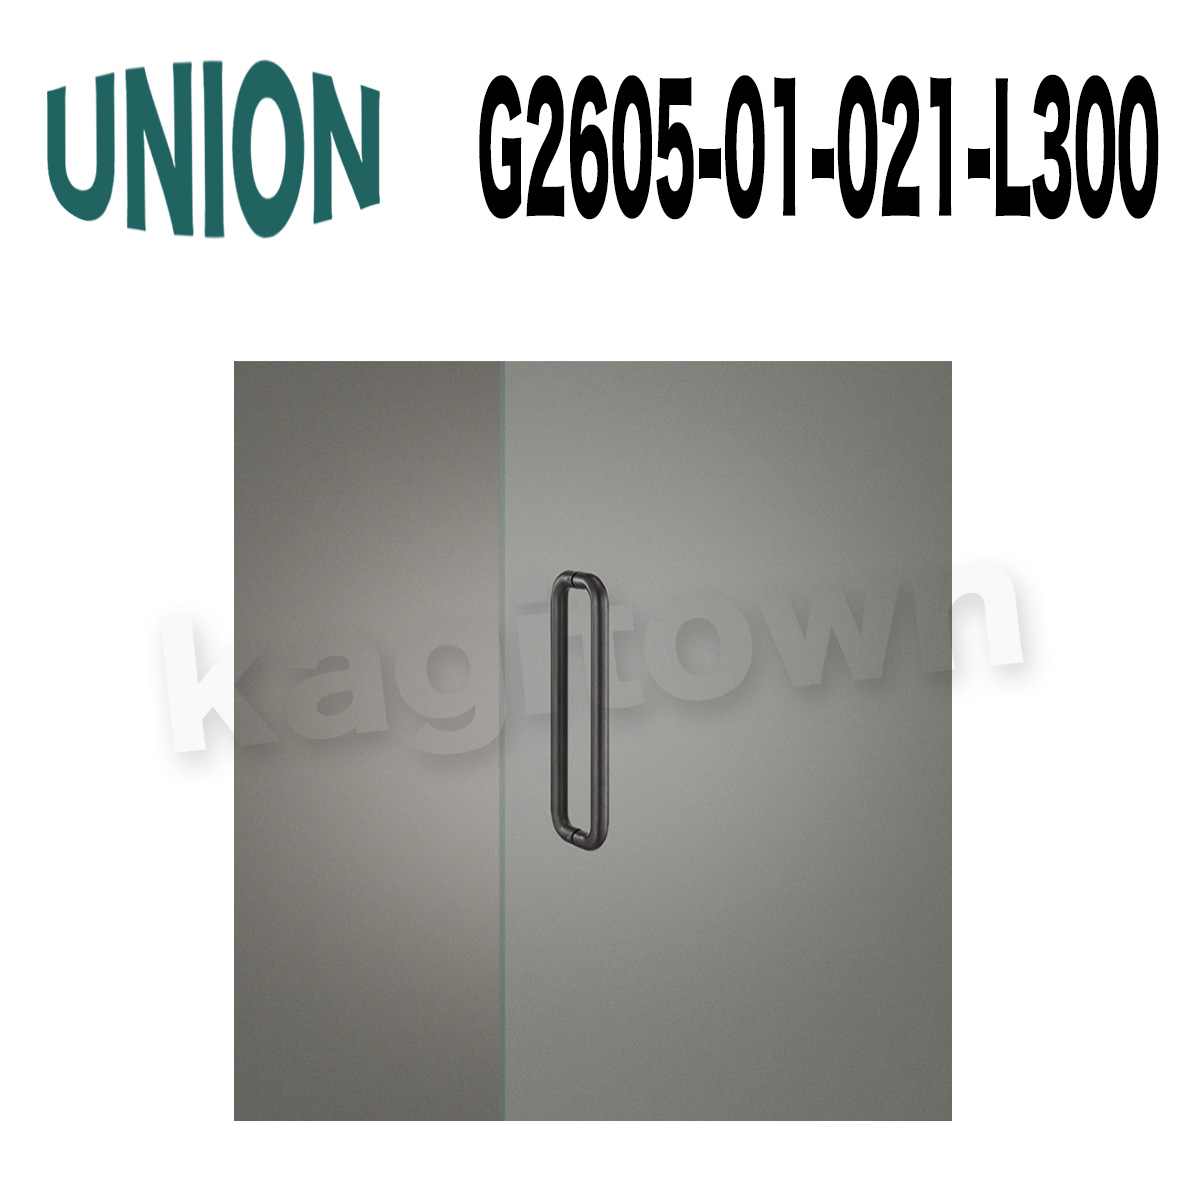 UNION【ユニオン】G2605-01-001-L150[ドアハンドル]押し棒 1セット